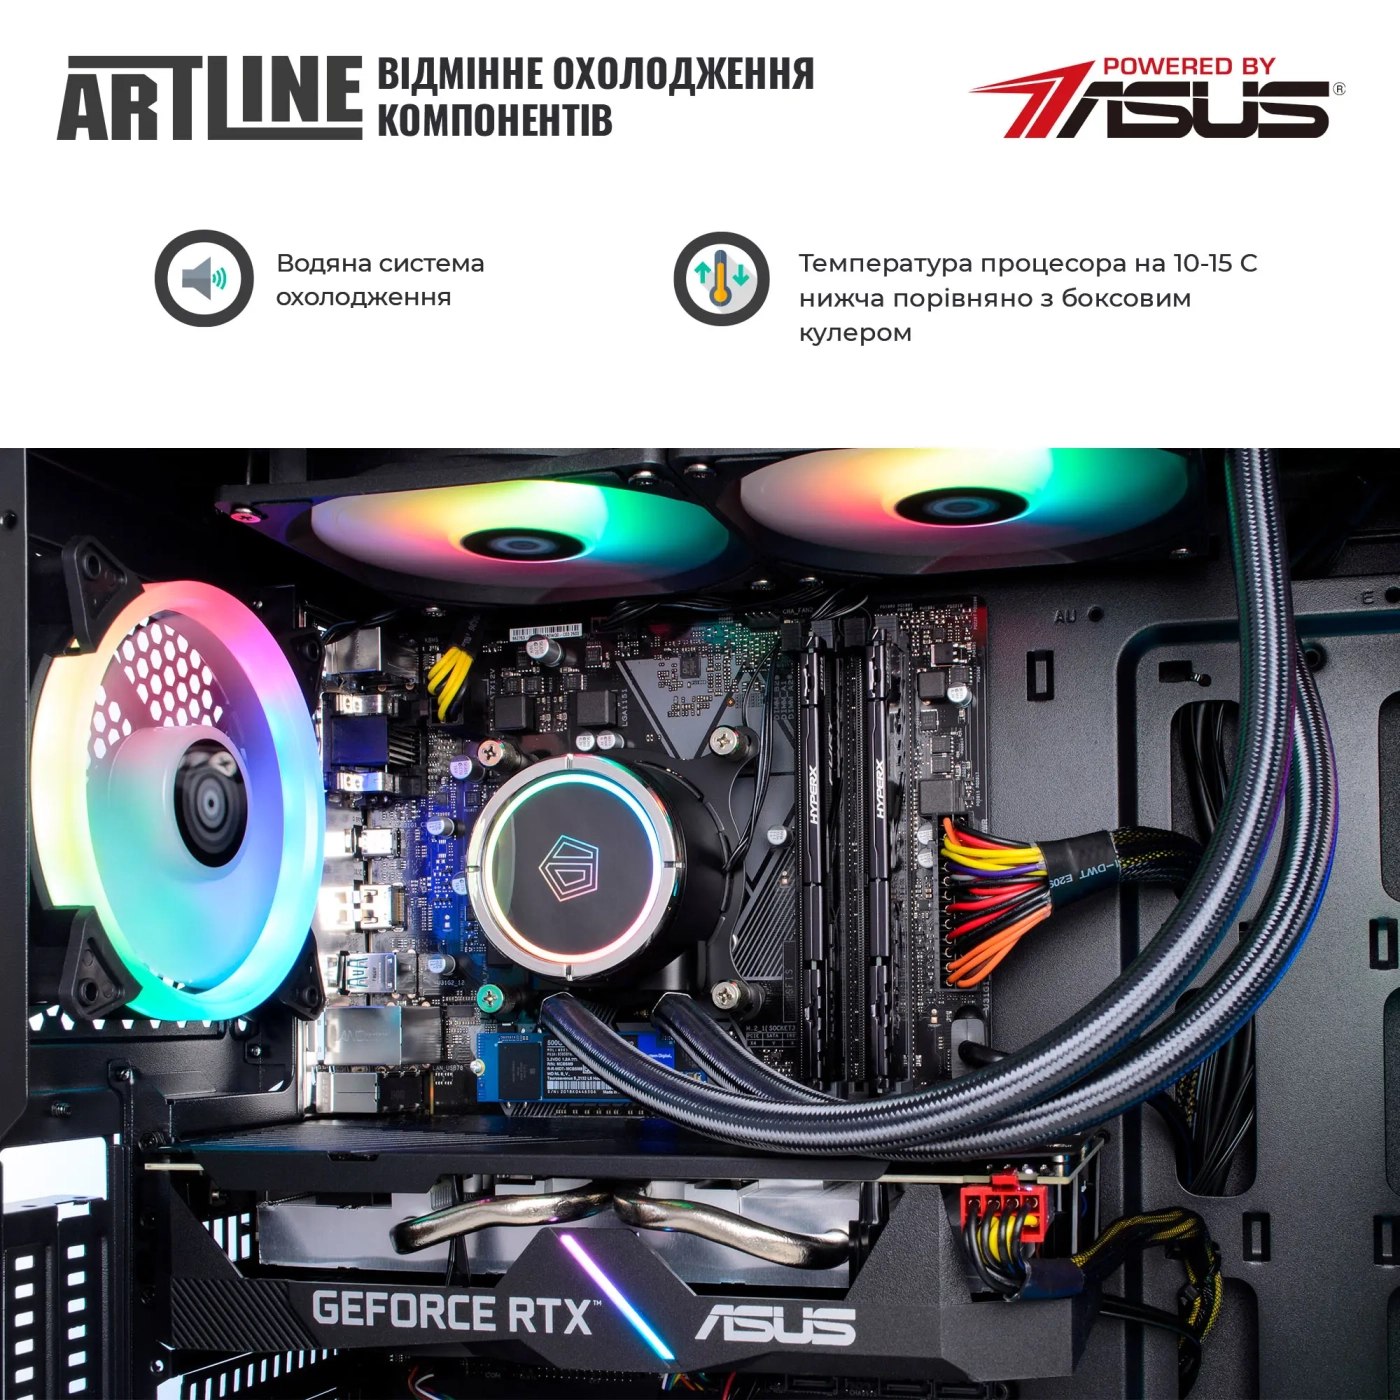 Купить Компьютер ARTLINE Gaming X77v90 - фото 4